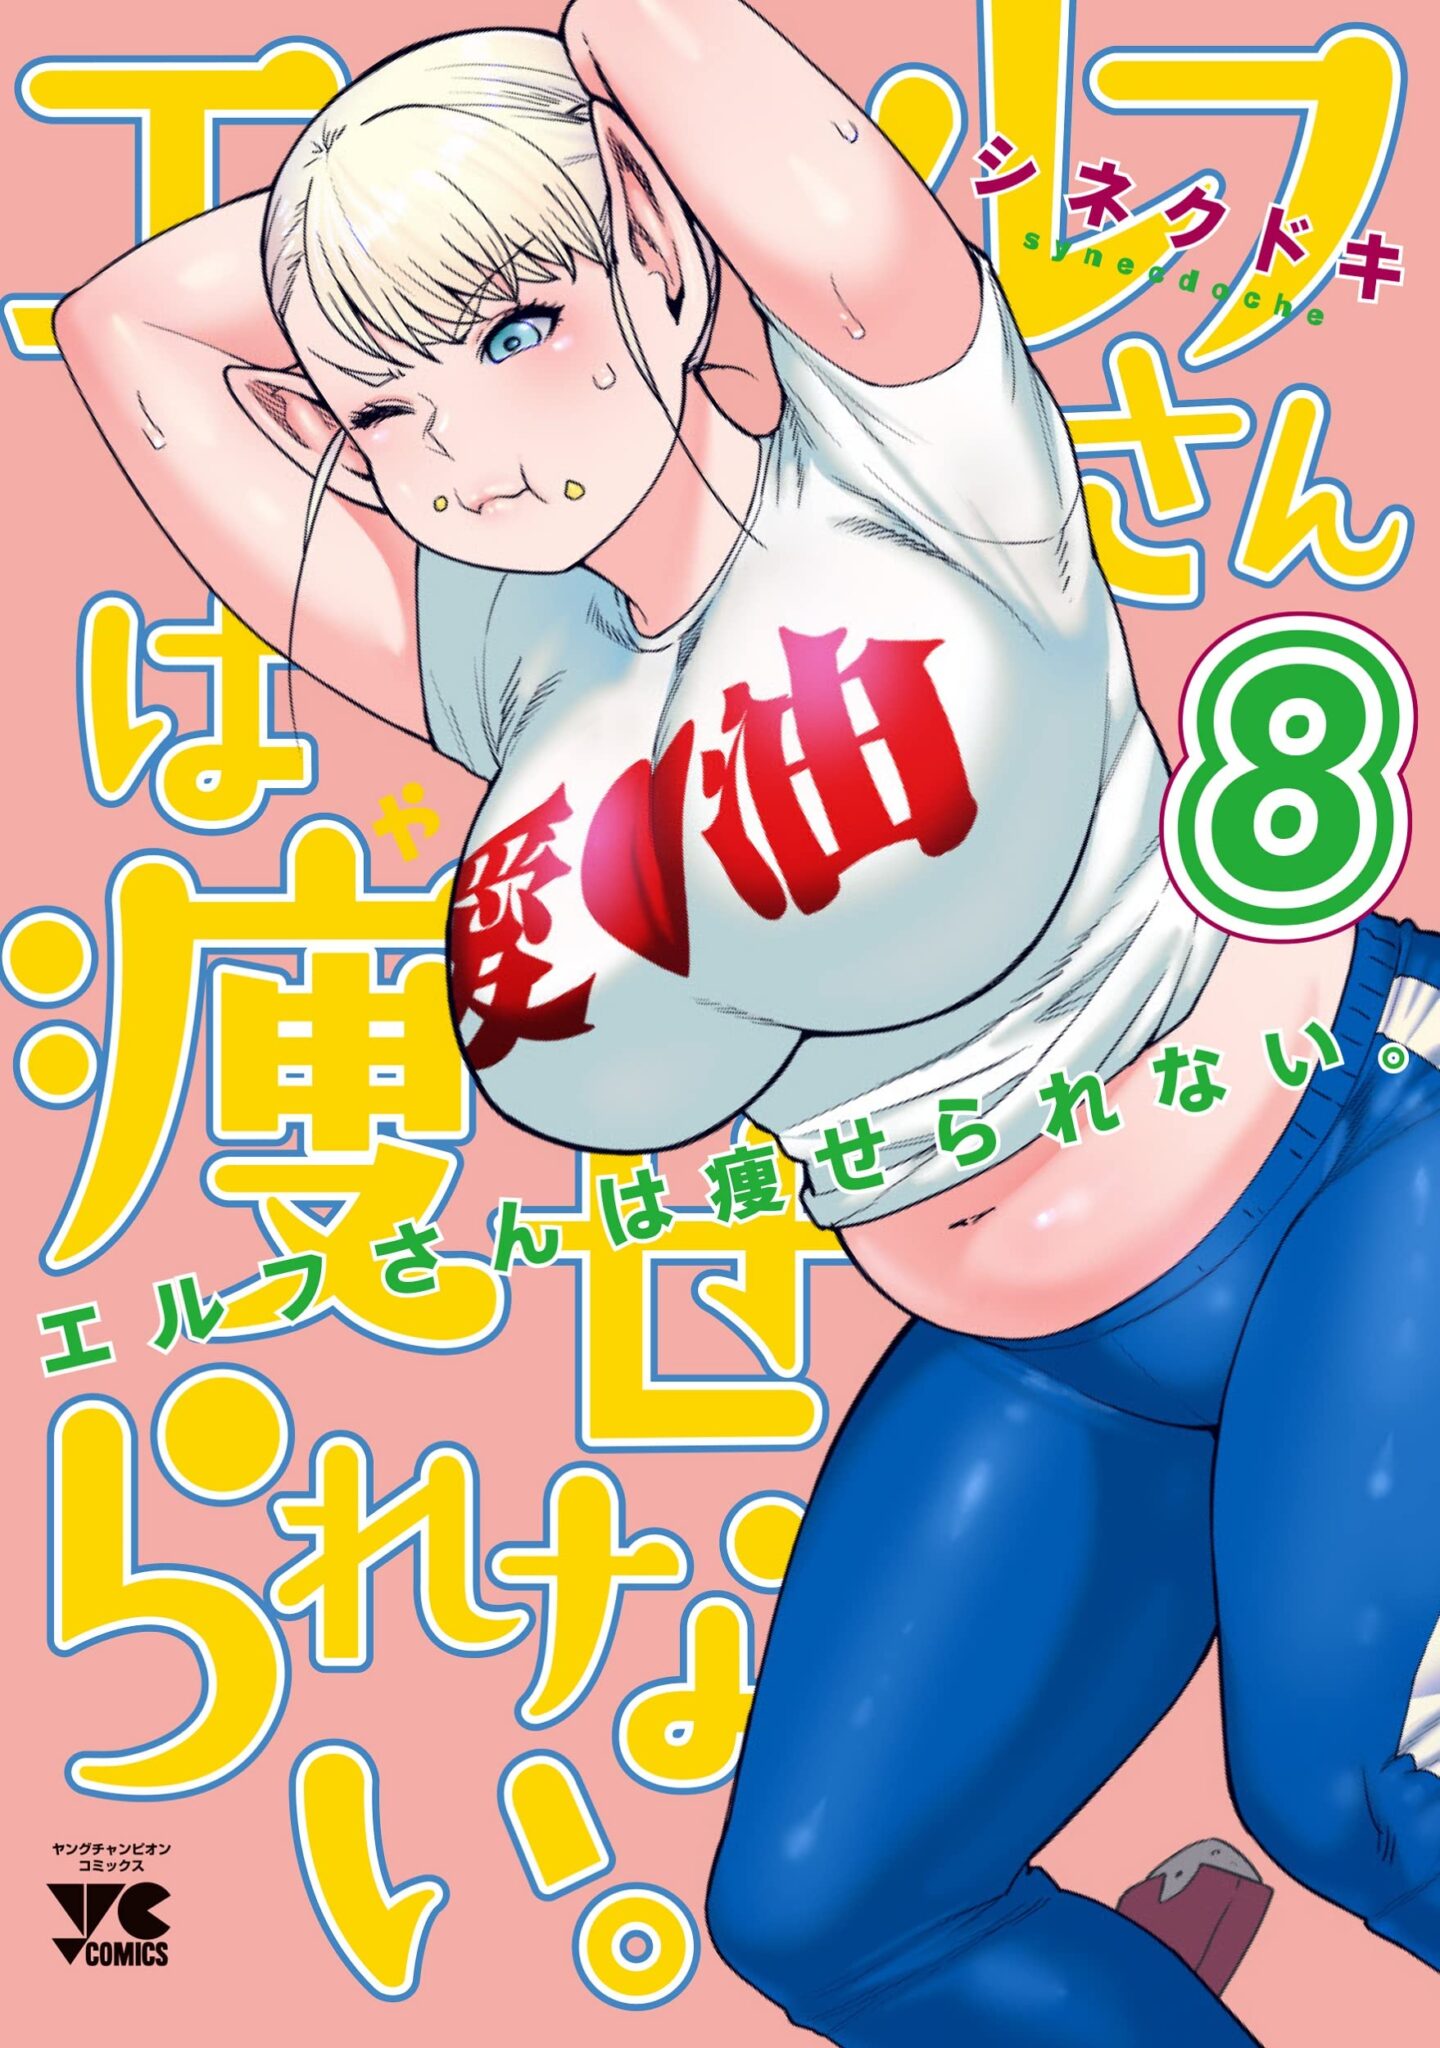 Elf-san wa Yaserarenai Manga Cover Volume 8